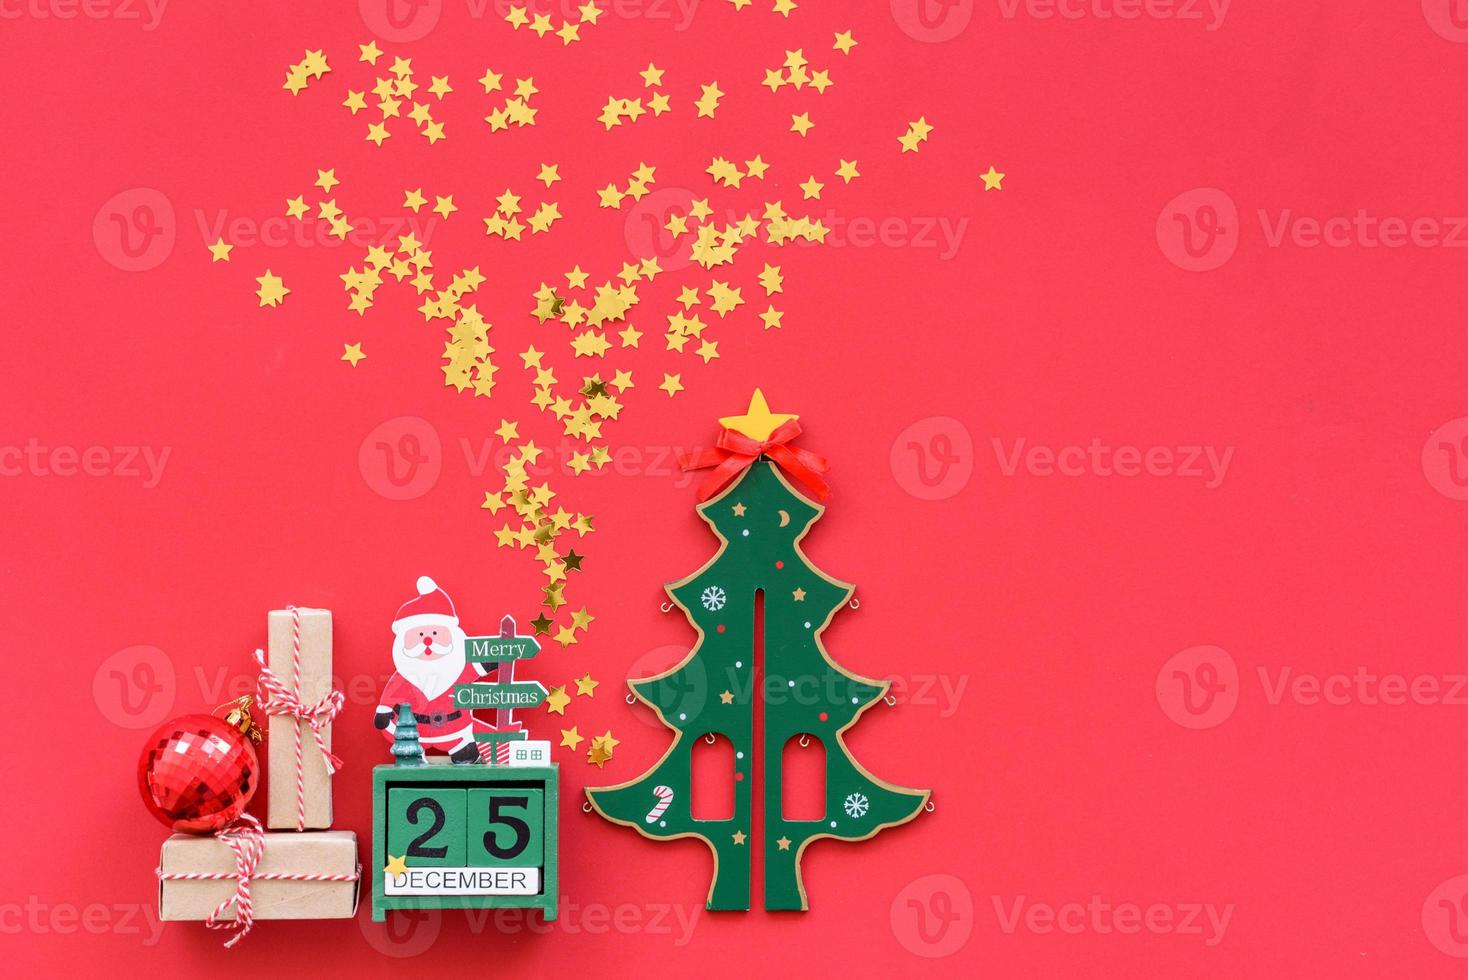 decorações de natal vermelhas, galhos de árvores de abeto em fundo vermelho foto